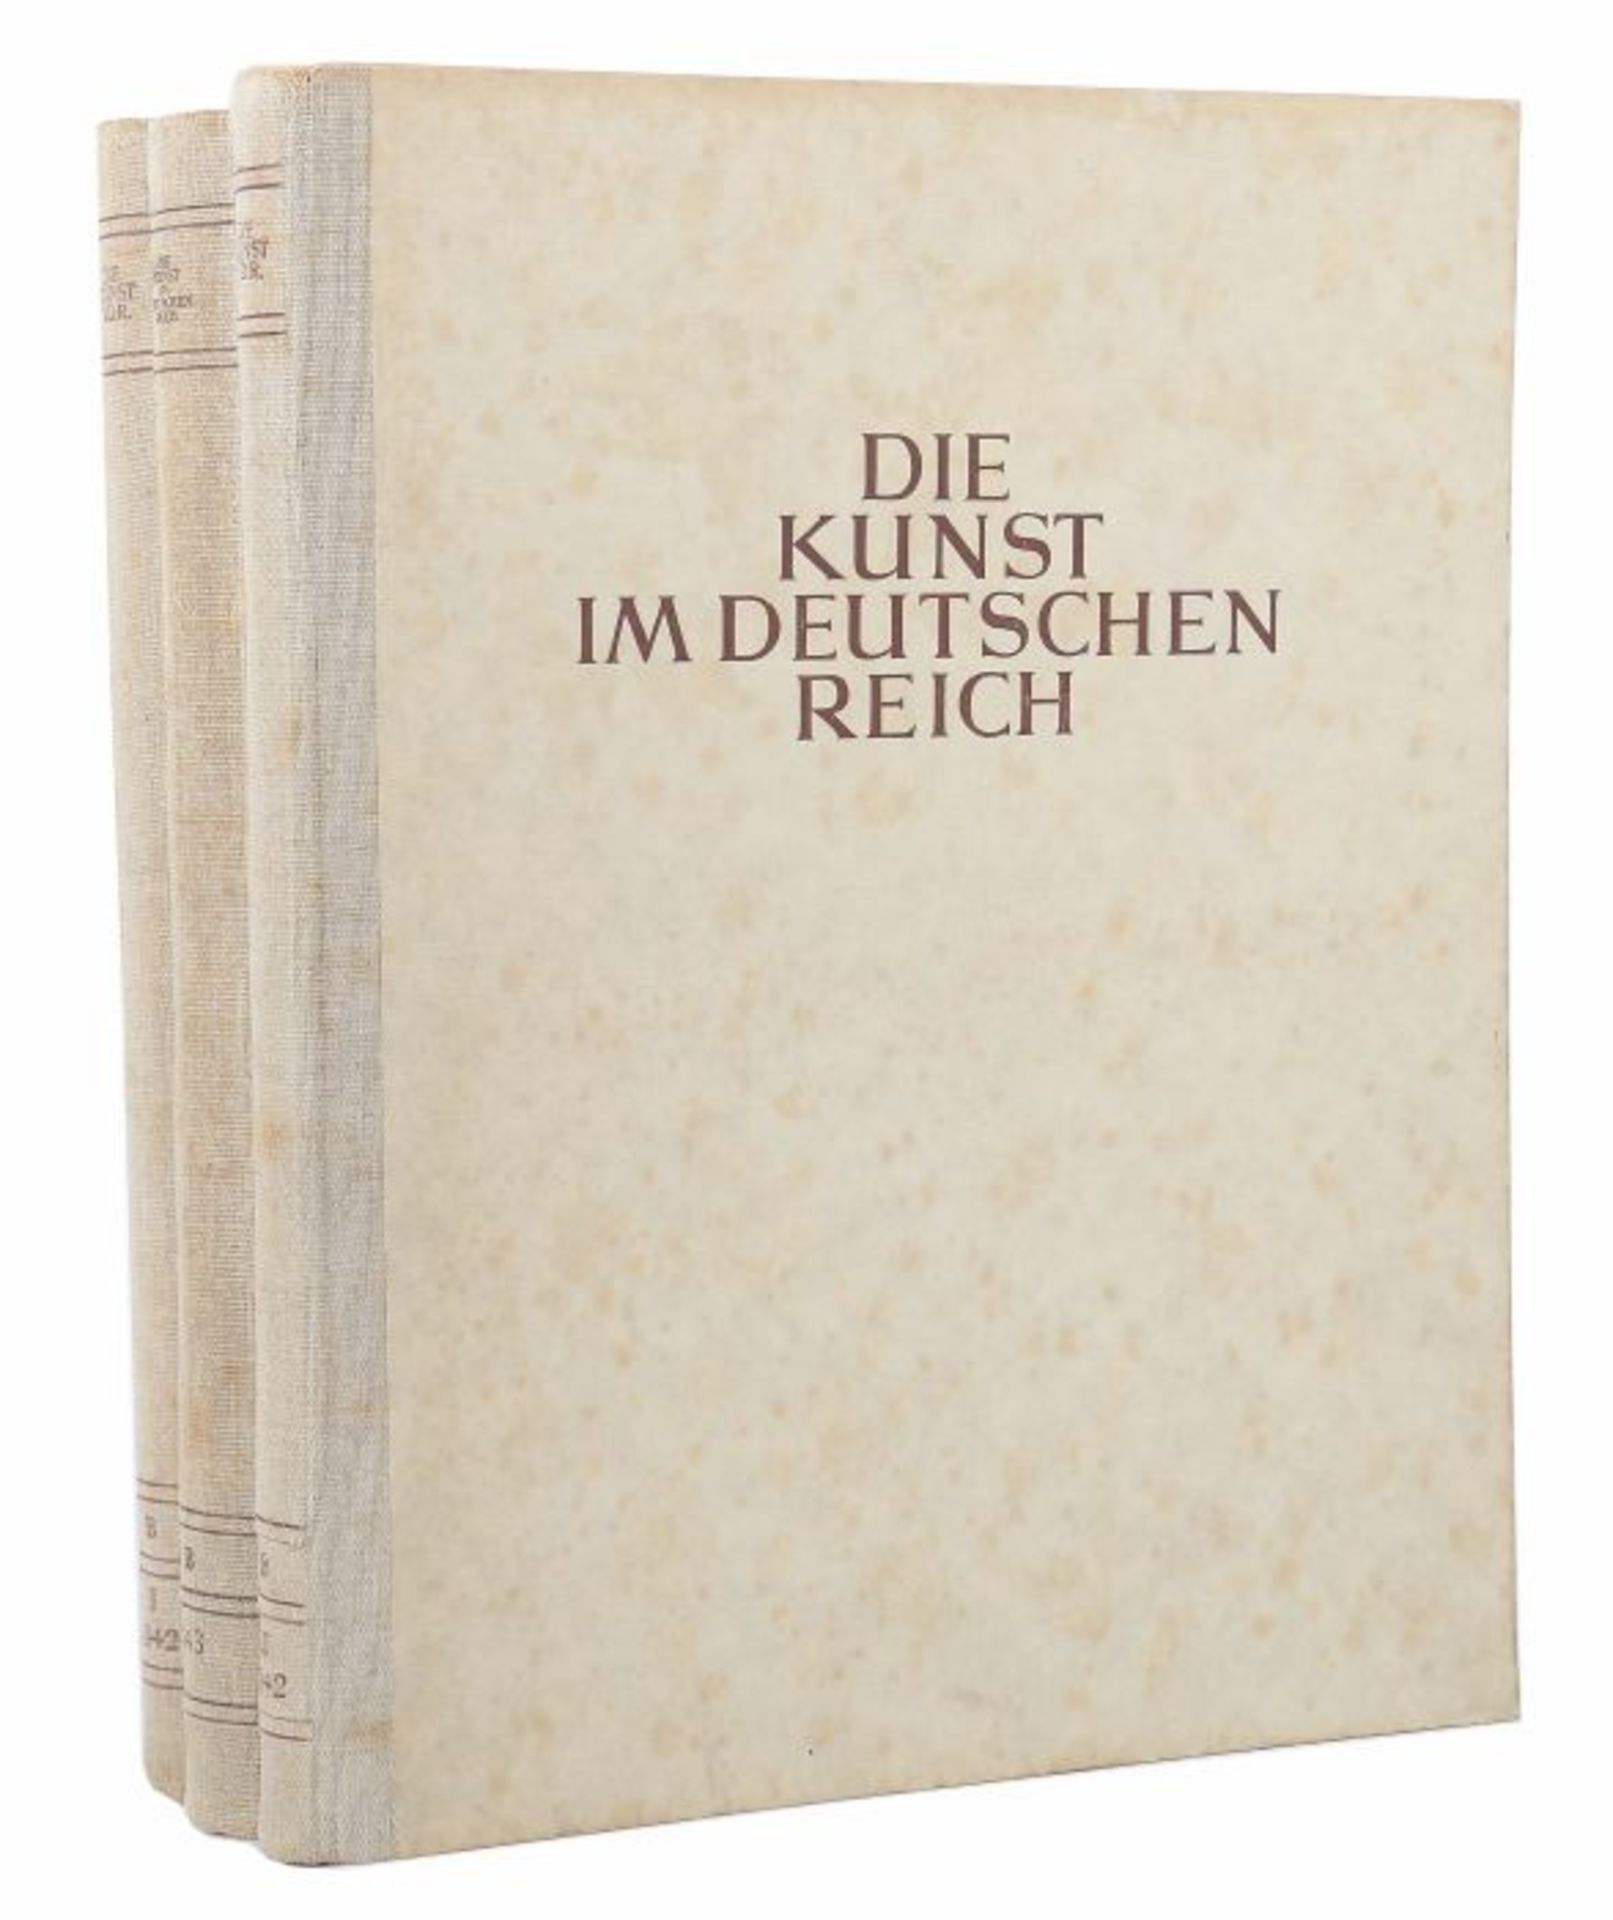 Die Kunst im Deutschen ReichMünchen, Franz Eher, 1941-44, 3 nachgebundene Bände mit gesammelten